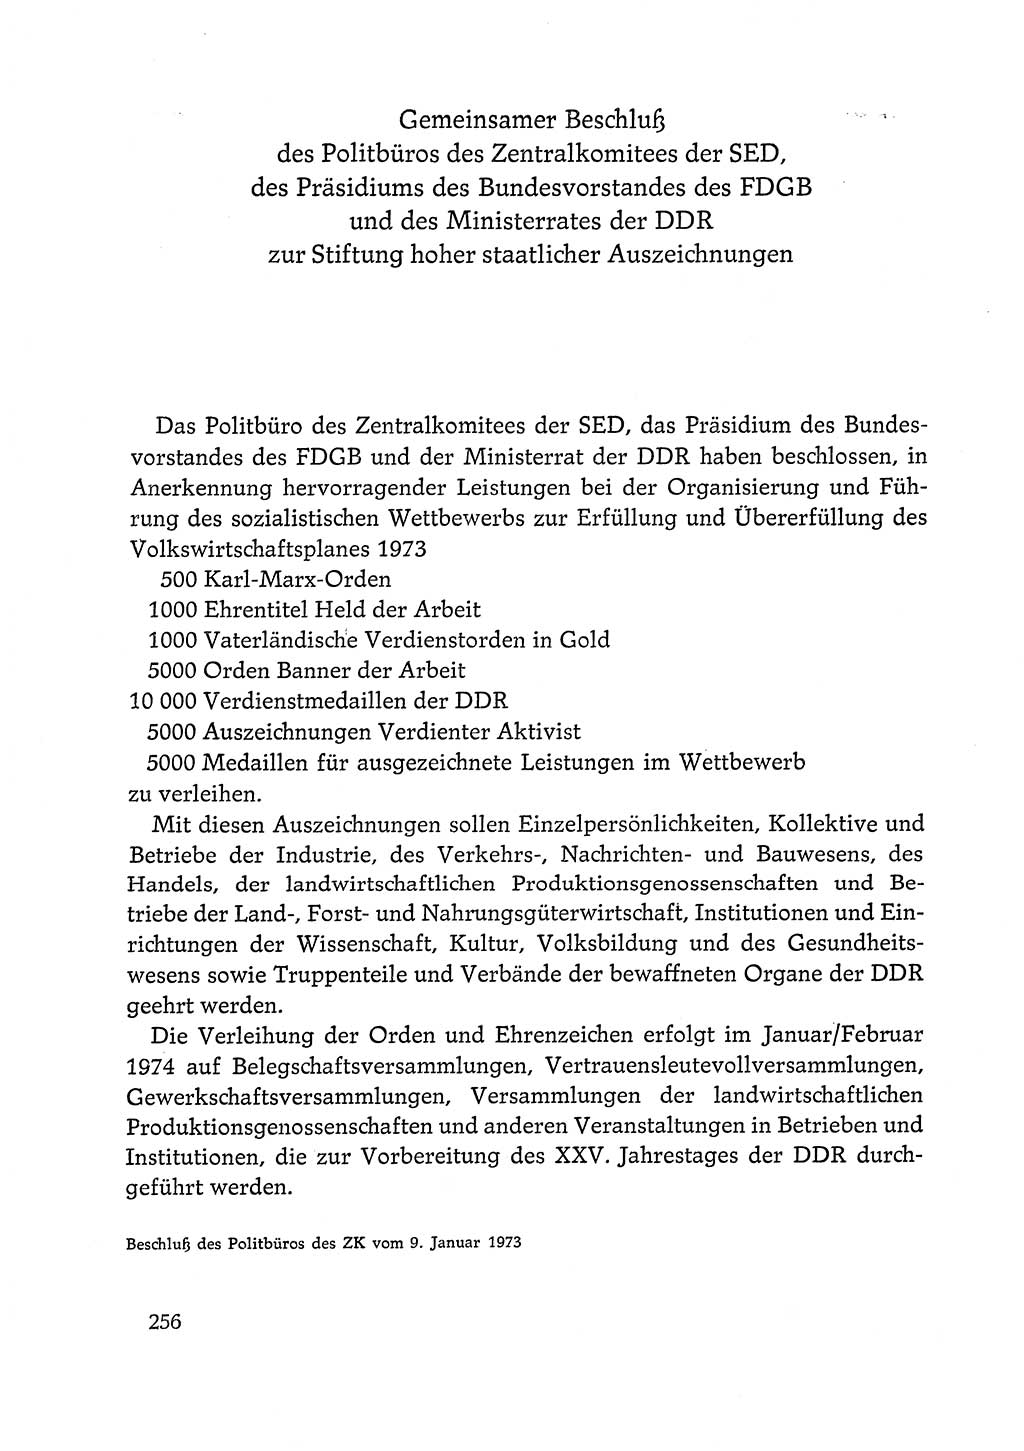 Dokumente der Sozialistischen Einheitspartei Deutschlands (SED) [Deutsche Demokratische Republik (DDR)] 1972-1973, Seite 256 (Dok. SED DDR 1972-1973, S. 256)